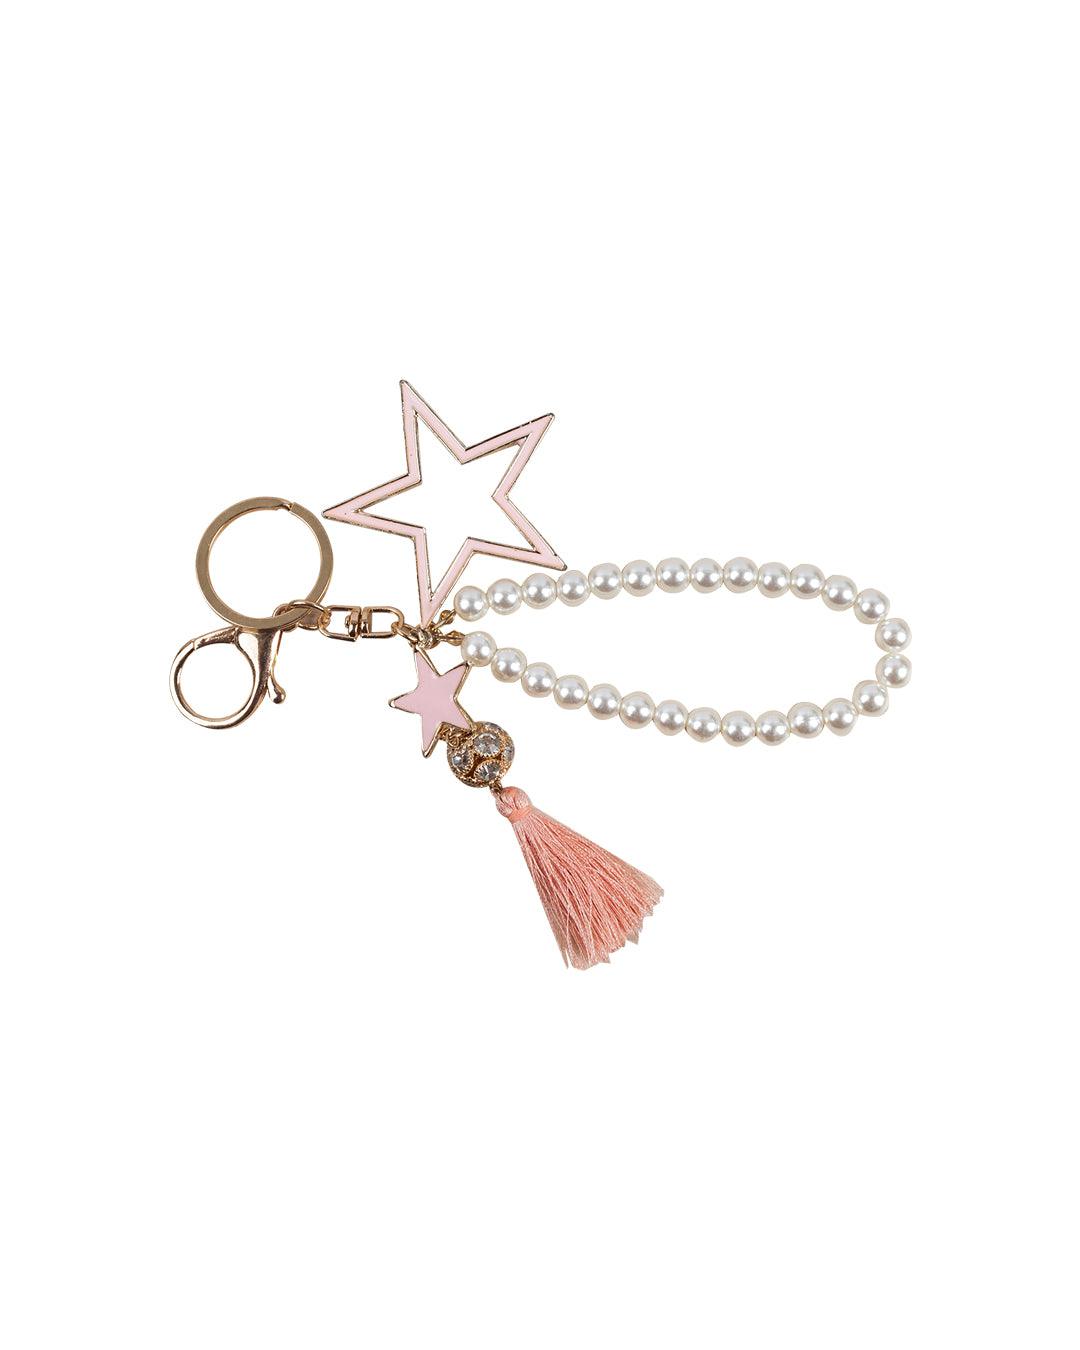 Donati Key Chain, Star & Pearls, Pink, PU Leather, - MARKET 99